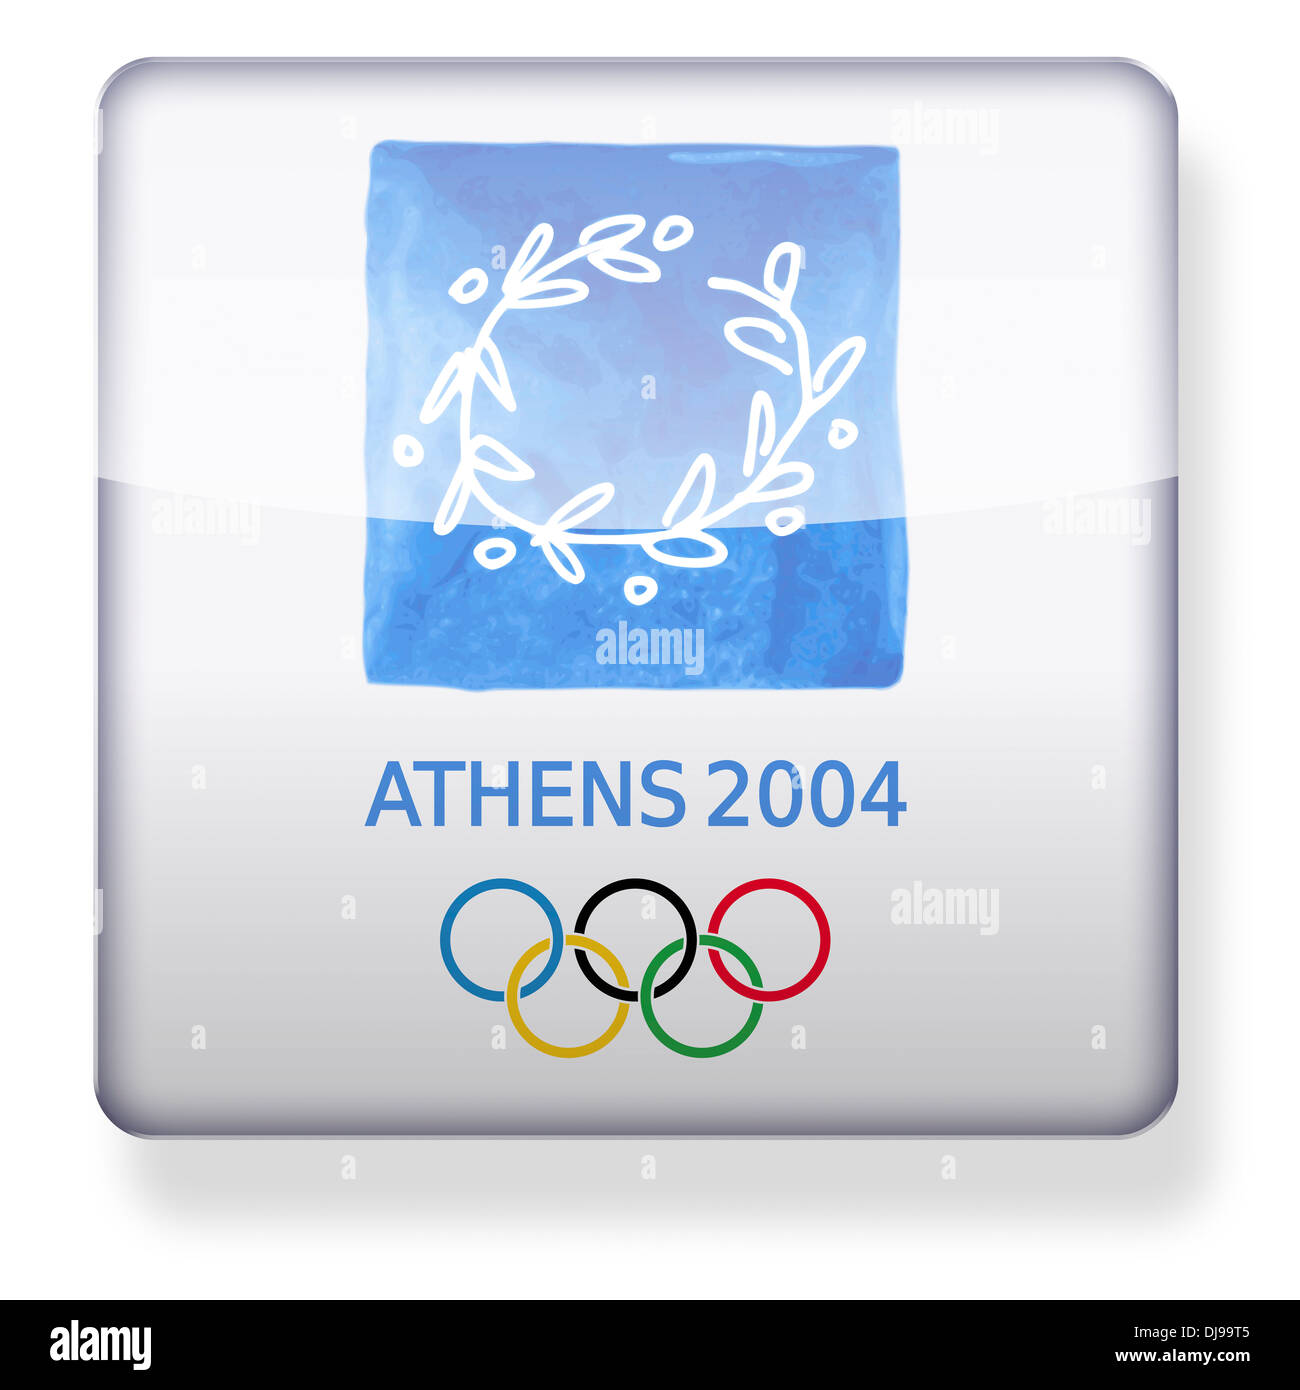 Juegos Olímpicos Atenas 2004 logotipo como el icono de una aplicación. Trazado de recorte incluido. Foto de stock